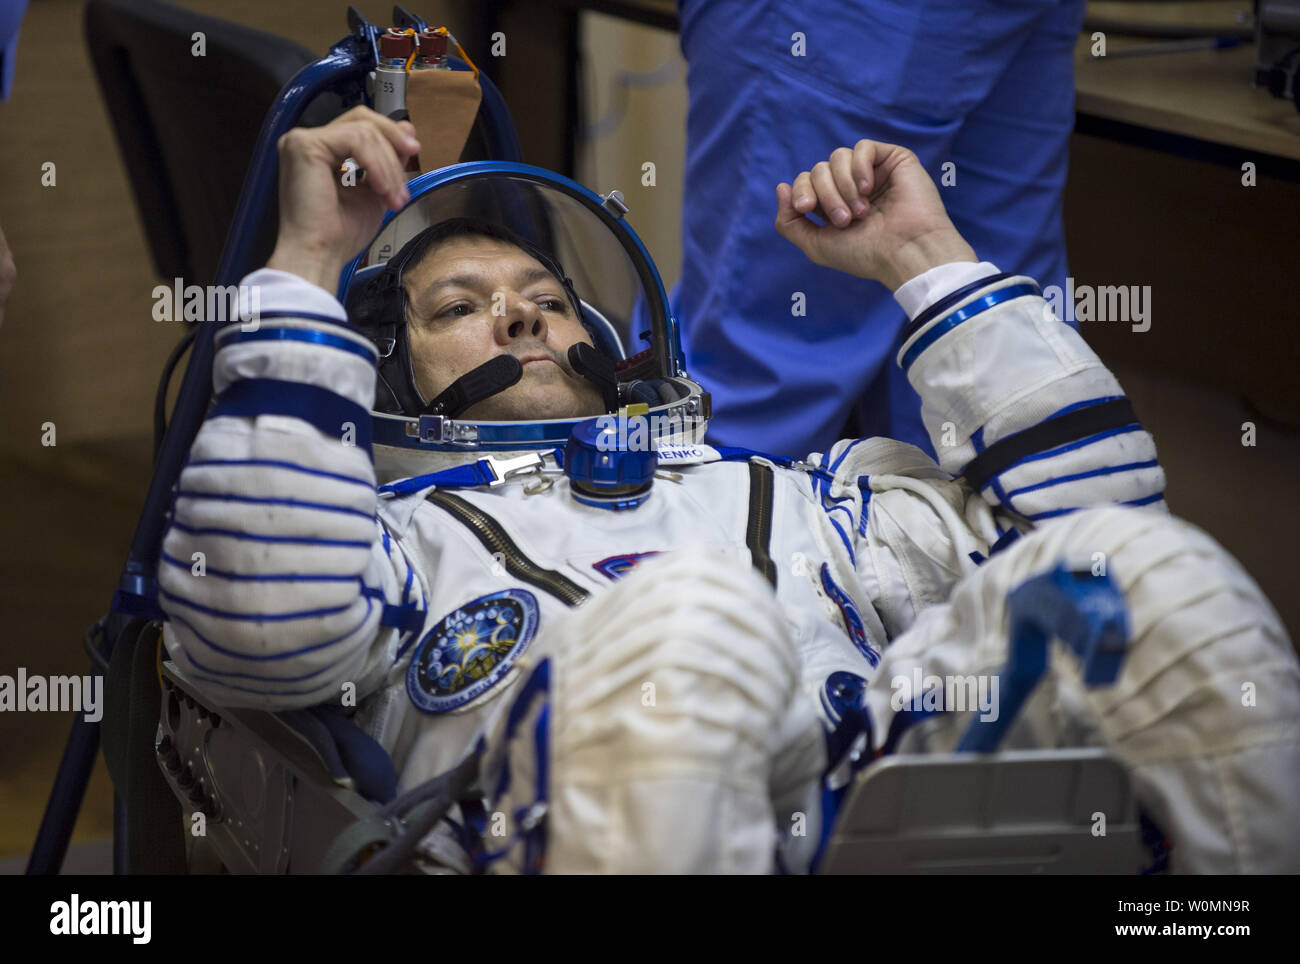 Expedition 44 Soyuz Commander Oleg Kononenko di l'agenzia Spaziale Federale Russa Roscosmos () ha il suo russo Sokol tuta controllato della pressione nella preparazione per il lancio a bordo della Soyuz TMA-17M navicella spaziale su Mercoledì, 22 luglio 2015, presso il cosmodromo di Baikonur in Kazakistan. Lancio del razzo Soyuz è prevista per le prime ore di luglio 23 Cosmodromo di tempo e potrà trasportare Kononenko e compagni crewmates, Tecnico di volo Kimiya Yui della Japan Aerospace Exploration Agency (JAXA) e tecnico di volo Kjell Lindgren della NASA in orbita per iniziare i loro cinque mesi di missione sullo spazio internazionale Statio Foto Stock